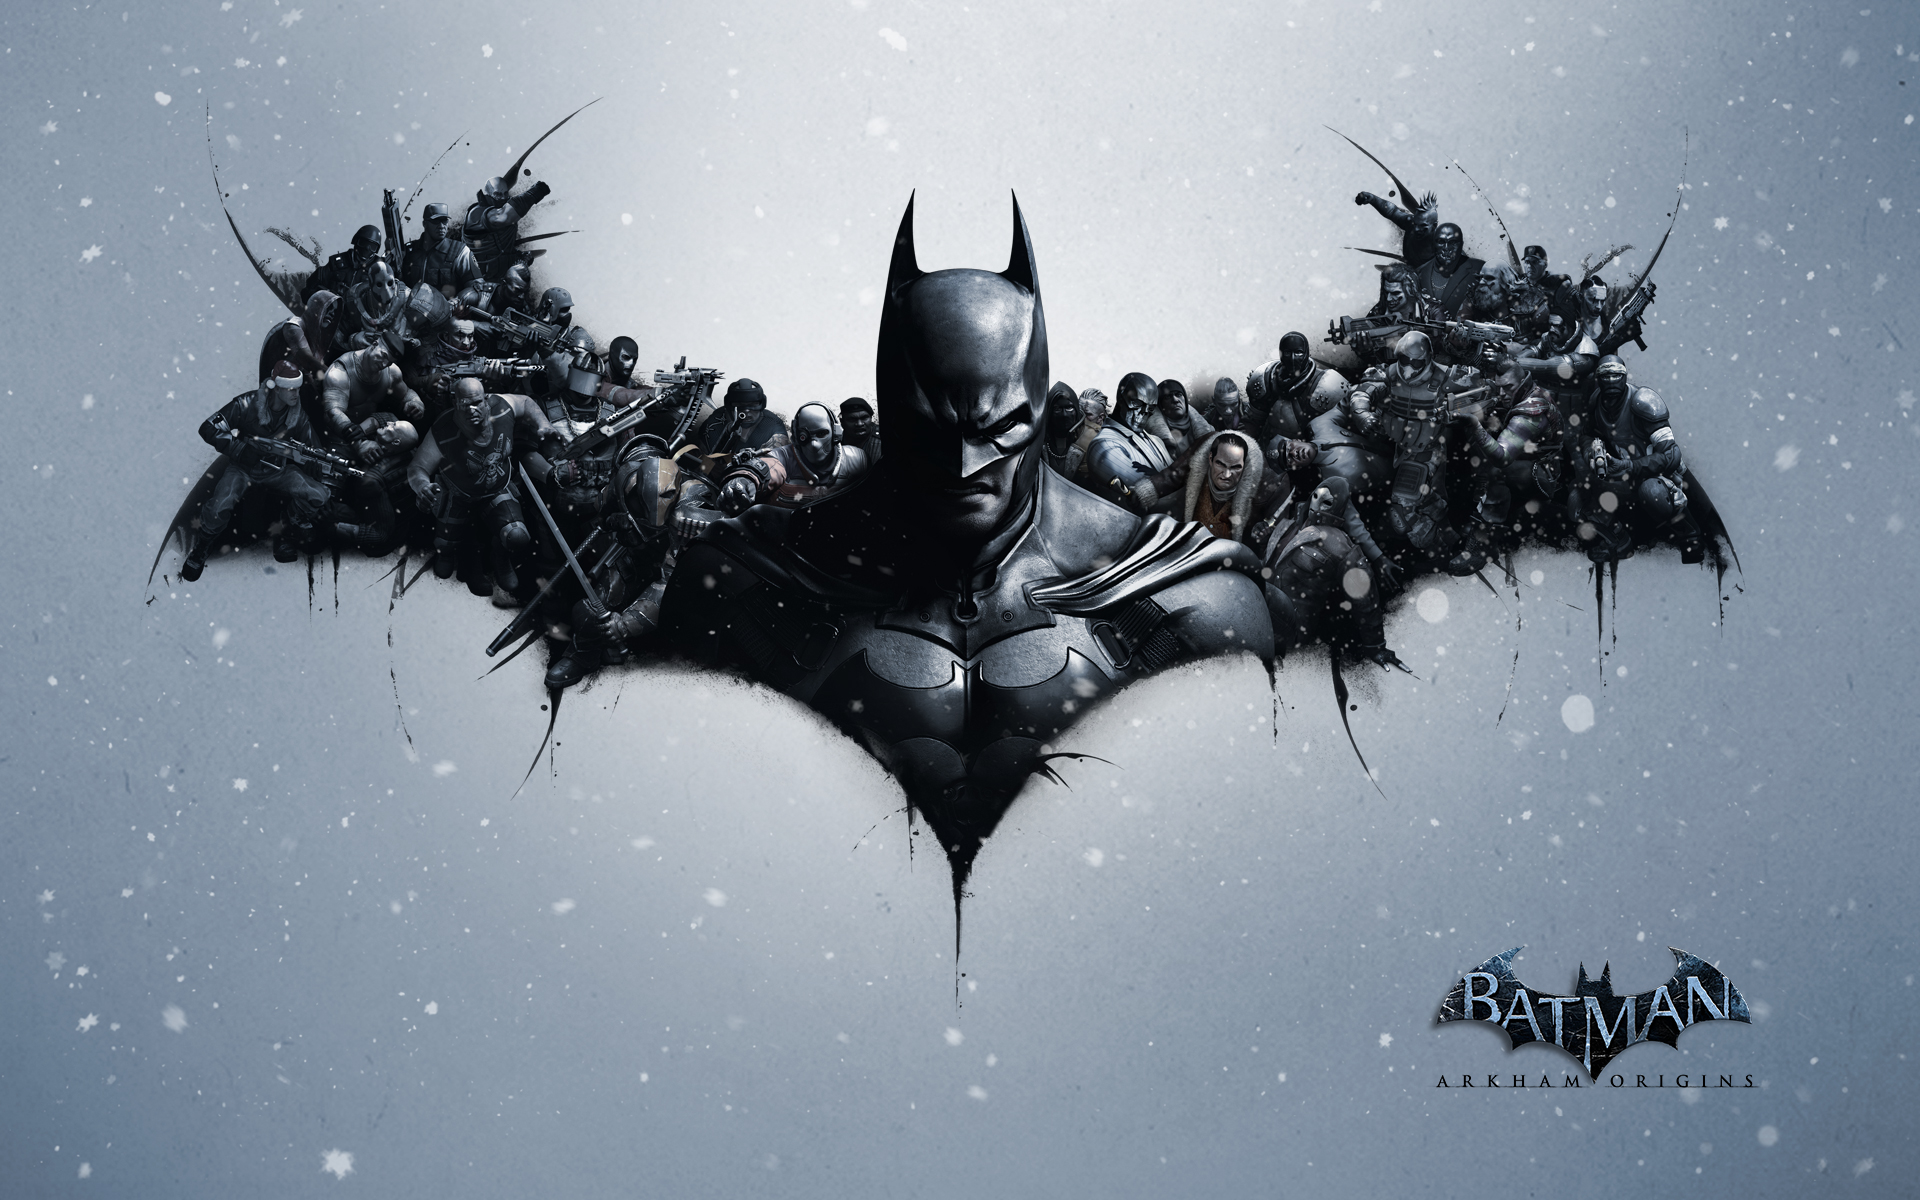 Batman Arkham Origins Full HD Fond D Cran And Arri Re